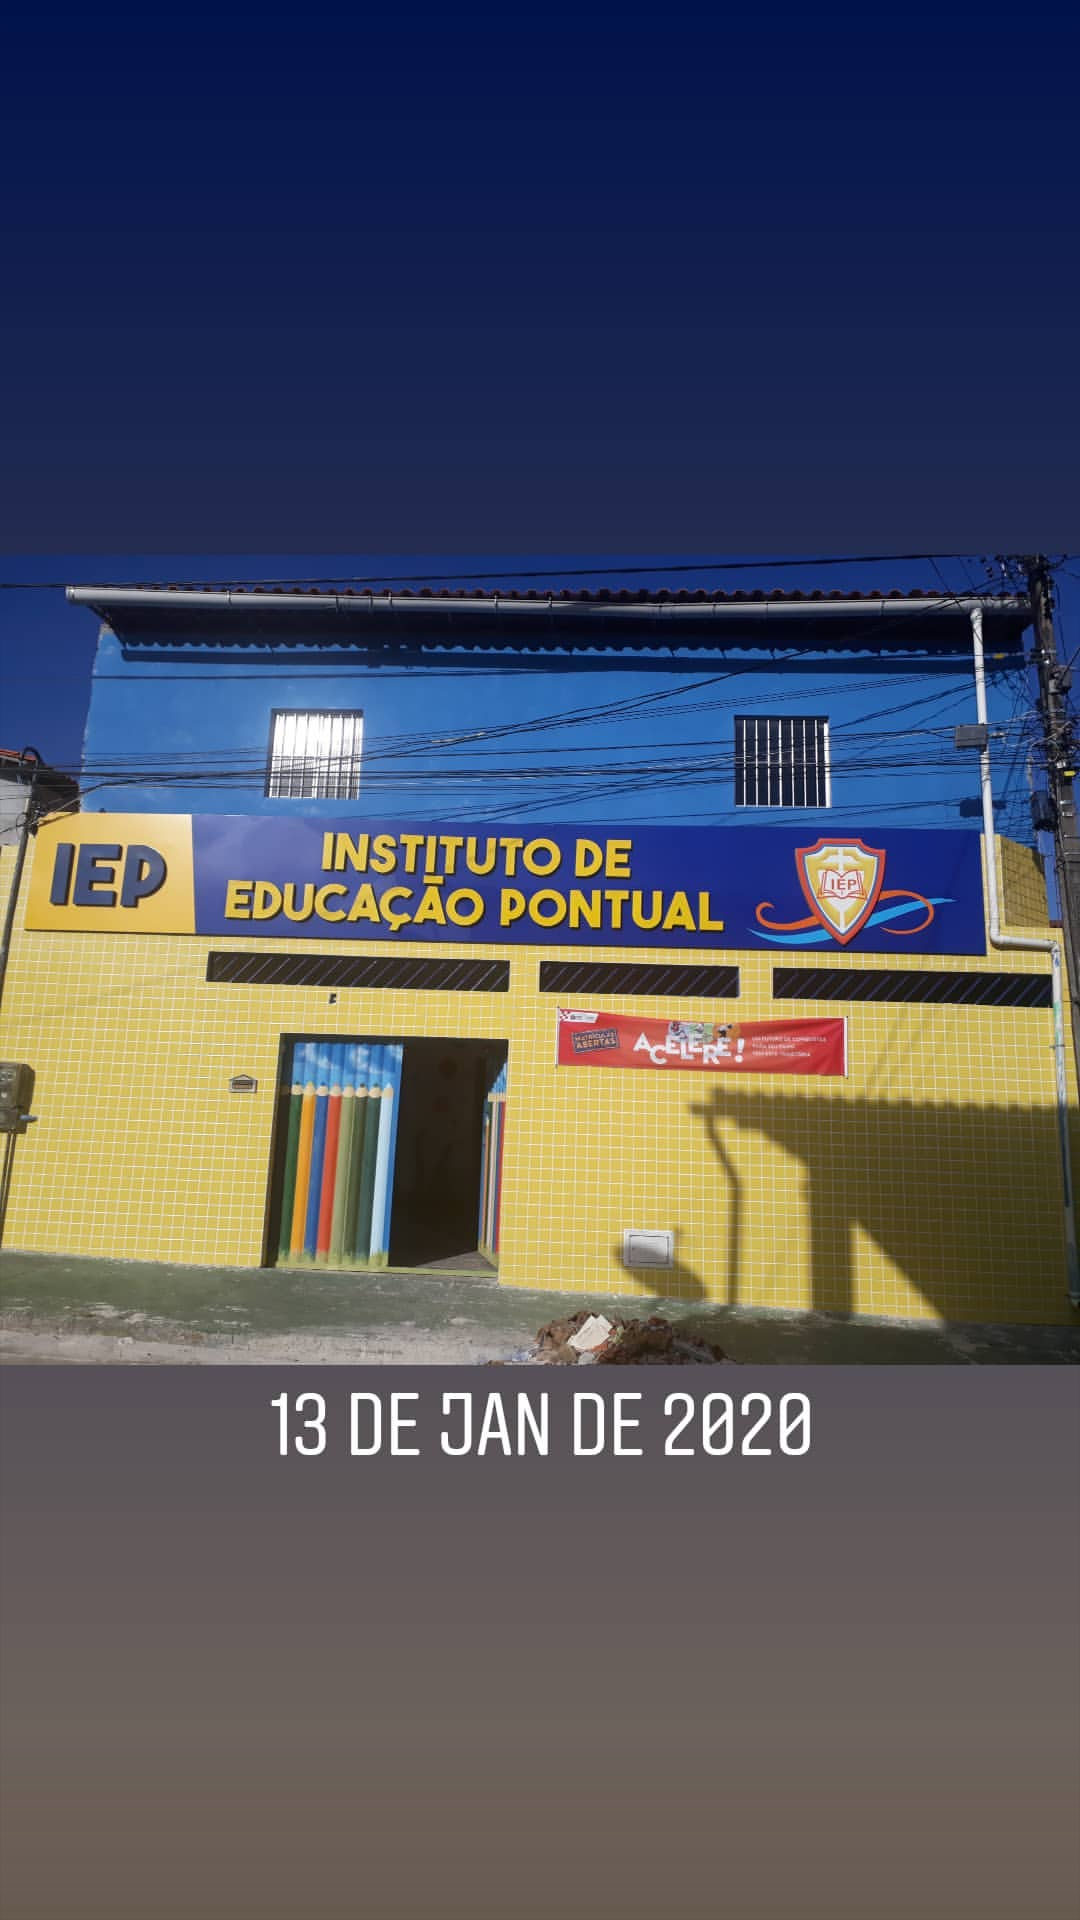 Escola IEP - Instituto de Educação Pontual